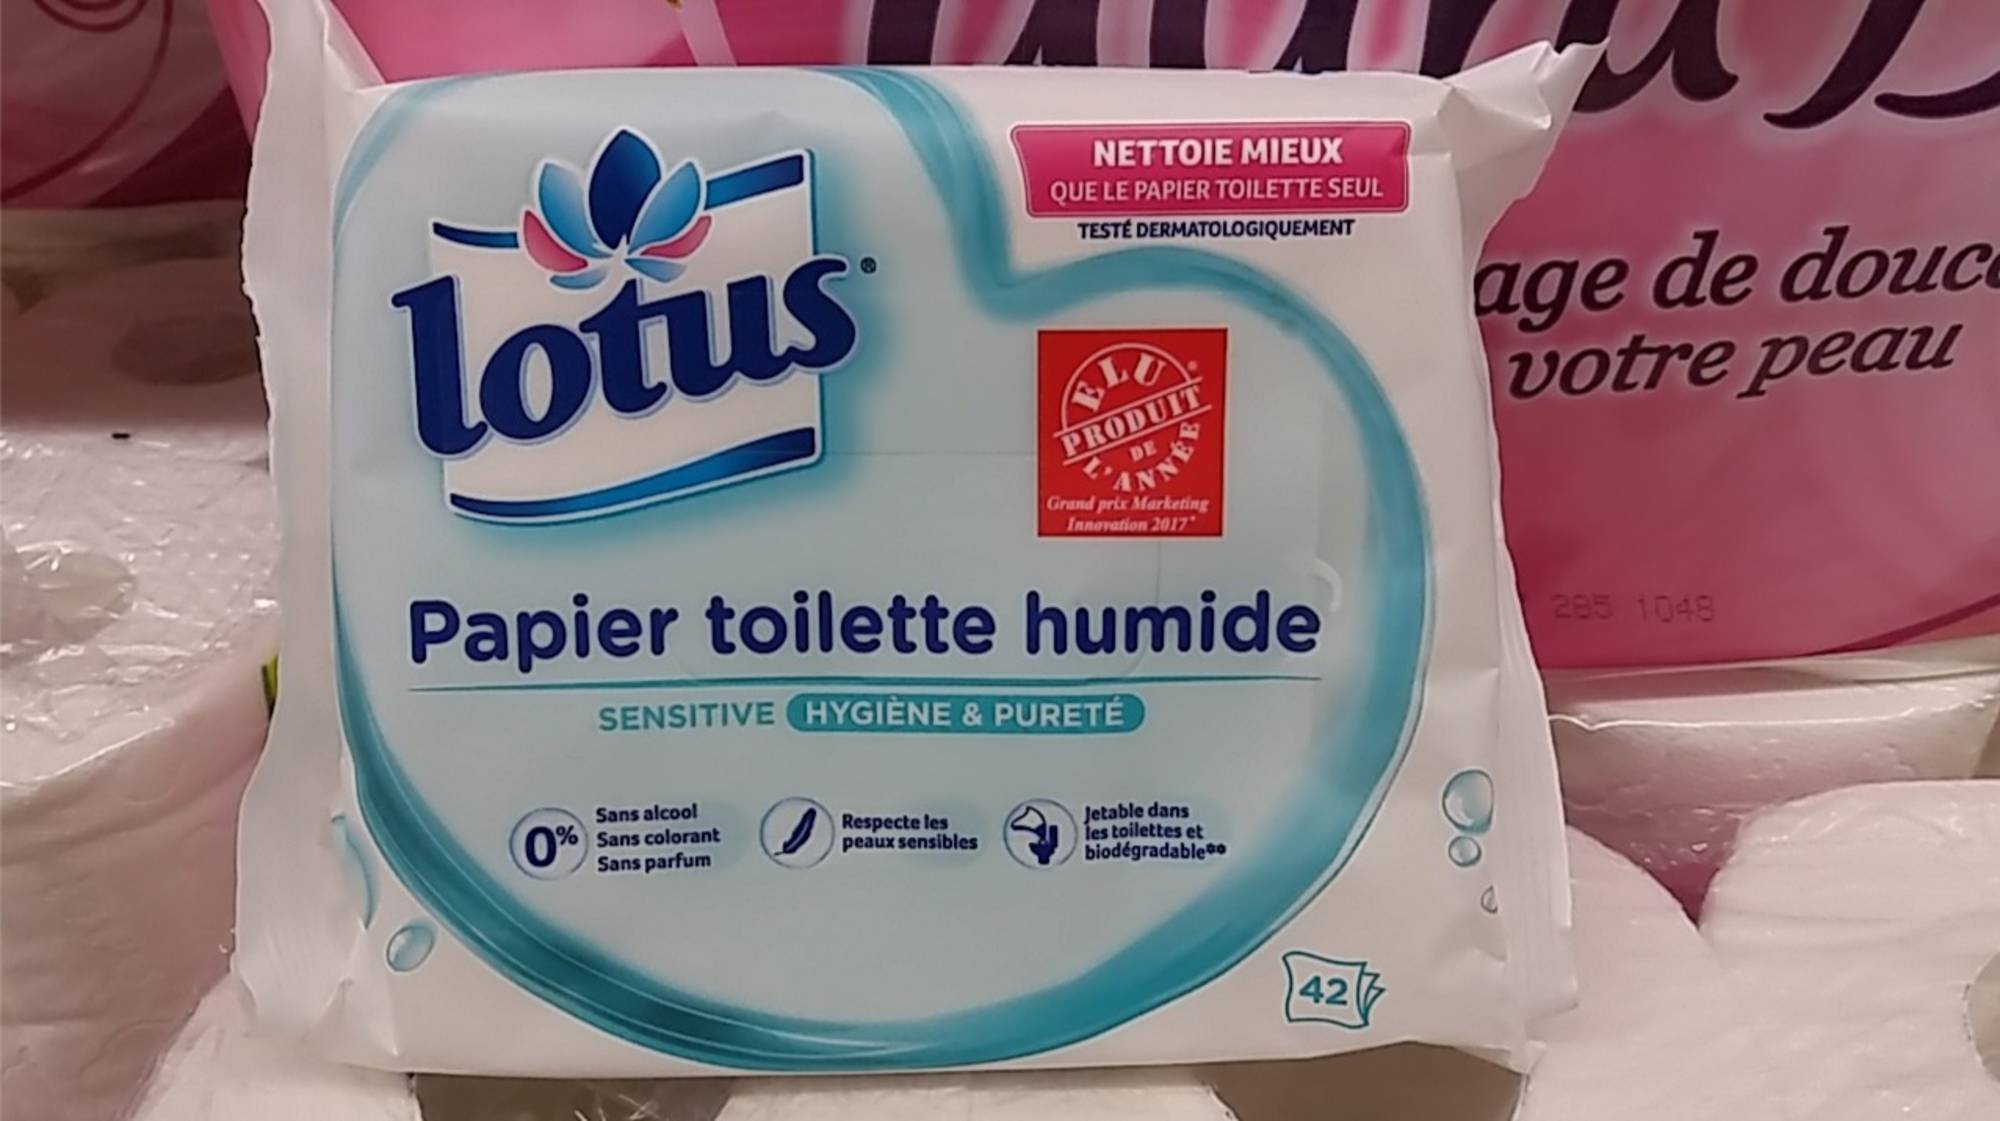 Galerie de photos Lotus papier toilette humide - Lotus moist